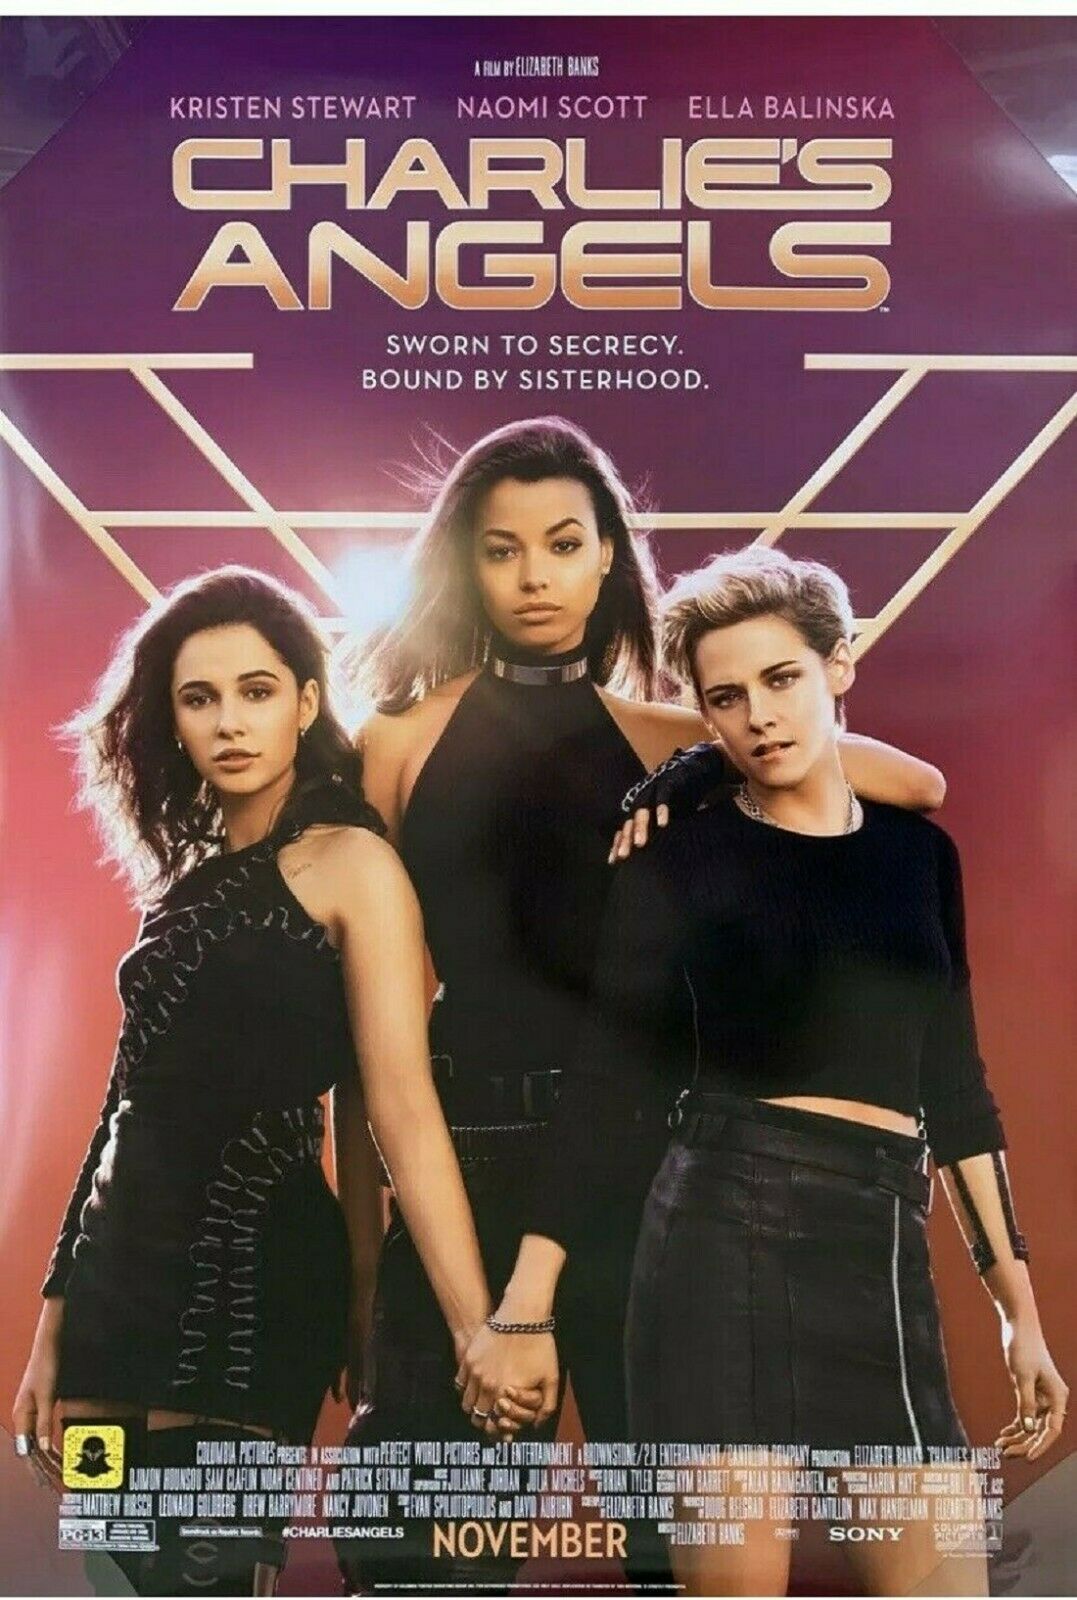 Charlie's Angels 27 X 40 Original 2019 D/s Movie Poster - Kristen Stewart